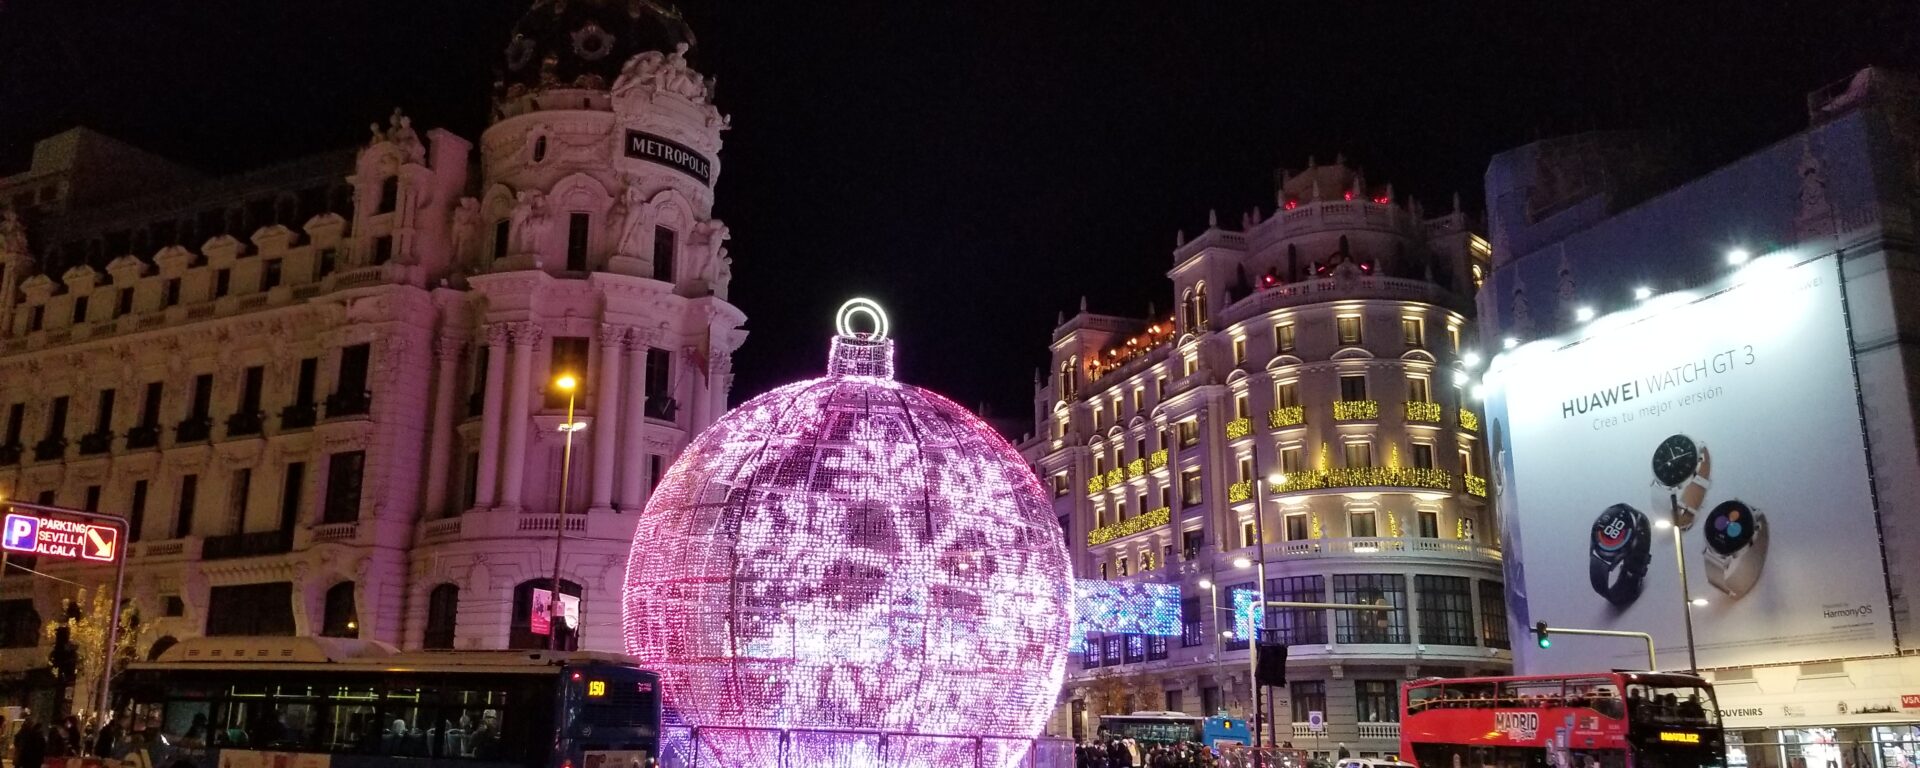 Luces de Navidad en Madrid Bola Gran Vía